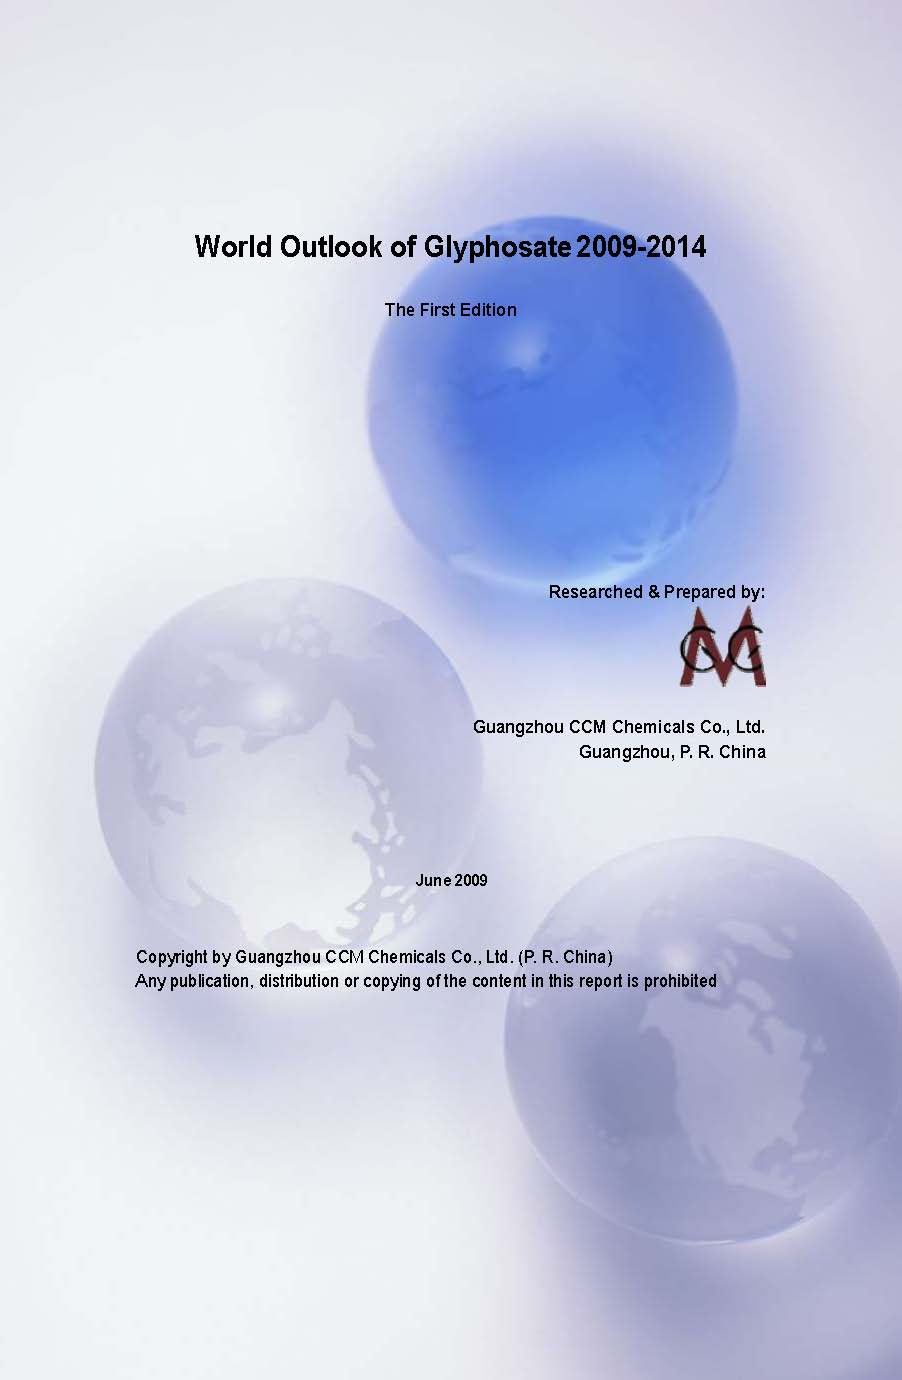 World Outlook of Glyphosate 2009-2014